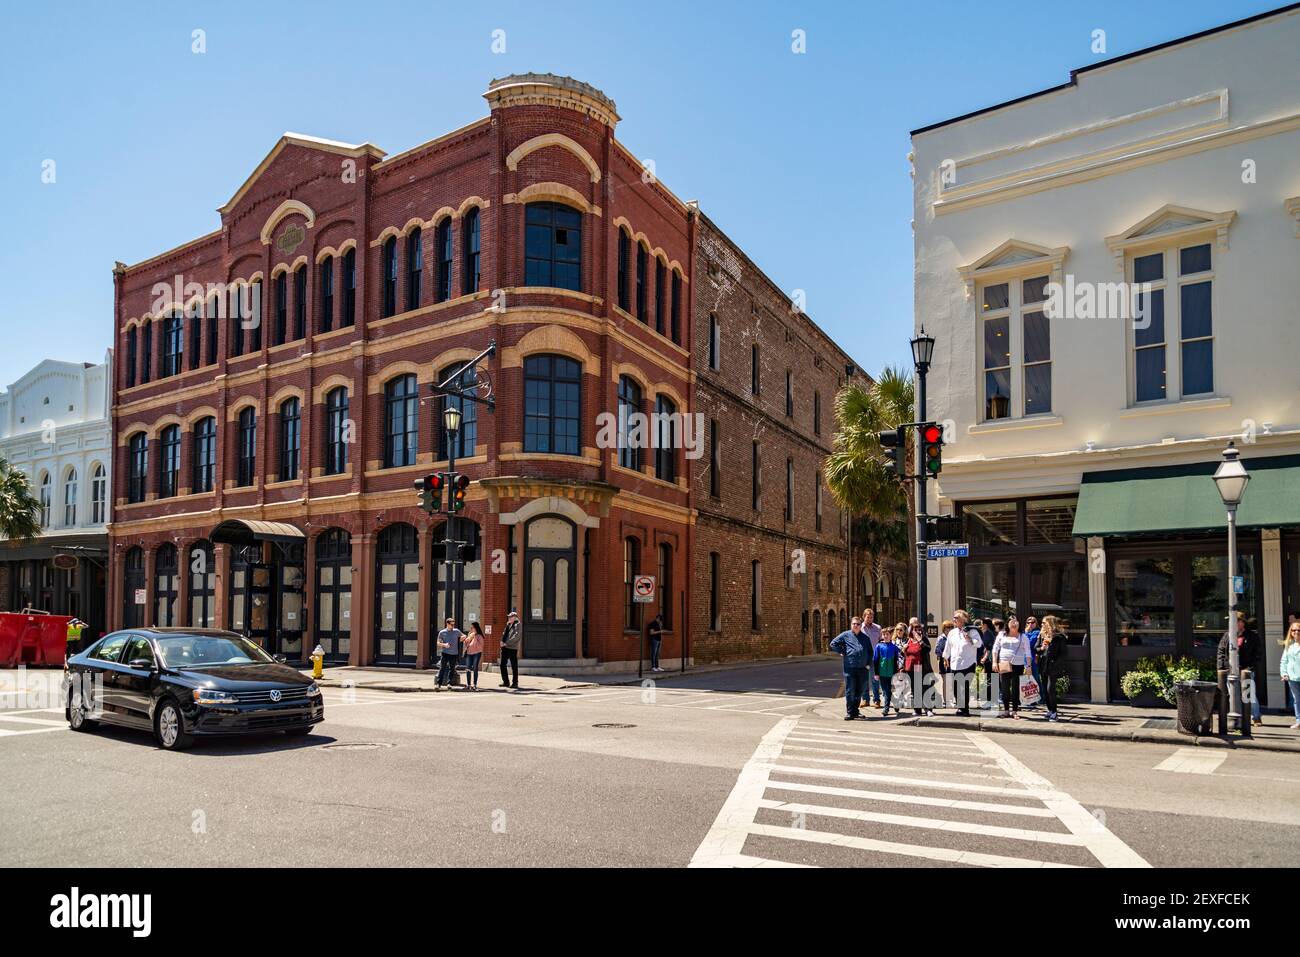 Le marché historique de Charleston City. En tant que l'un des plus anciens marchés publics du pays, les visiteurs trouvent plus de 300 entrepreneurs. Banque D'Images